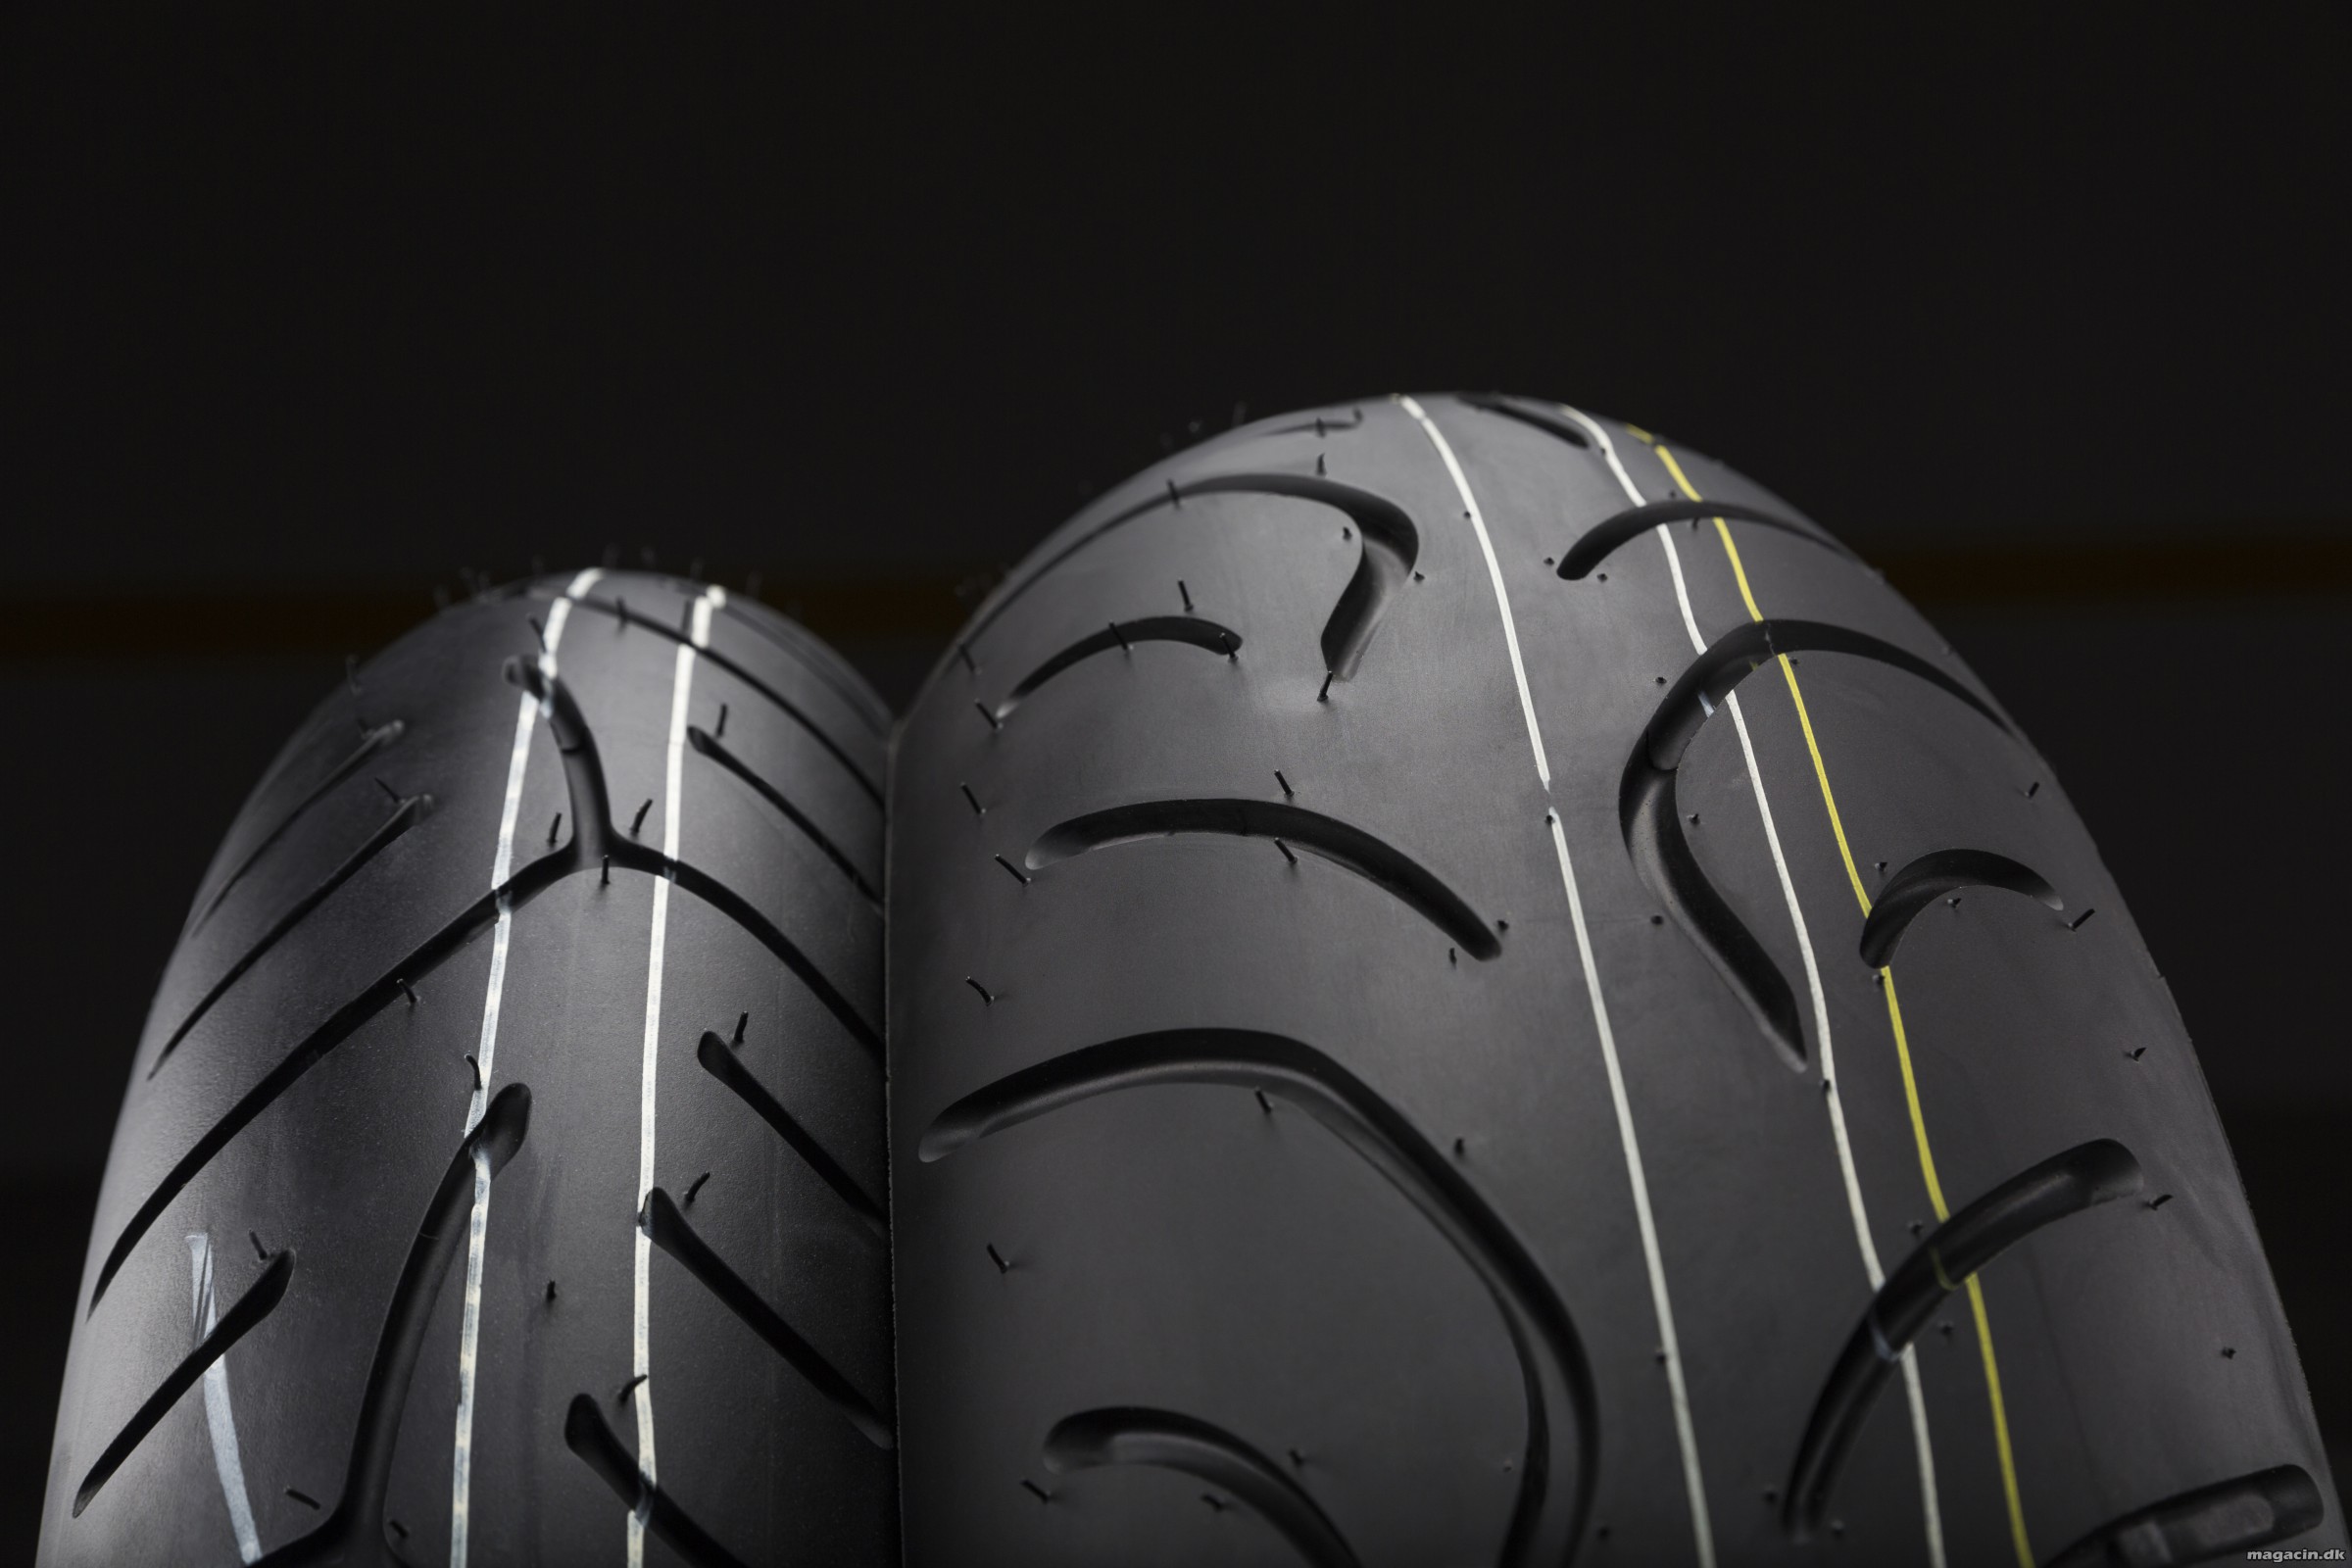 Dæktest: Bridgestone T30 – Nyt dansker dæk fra Bridgestone